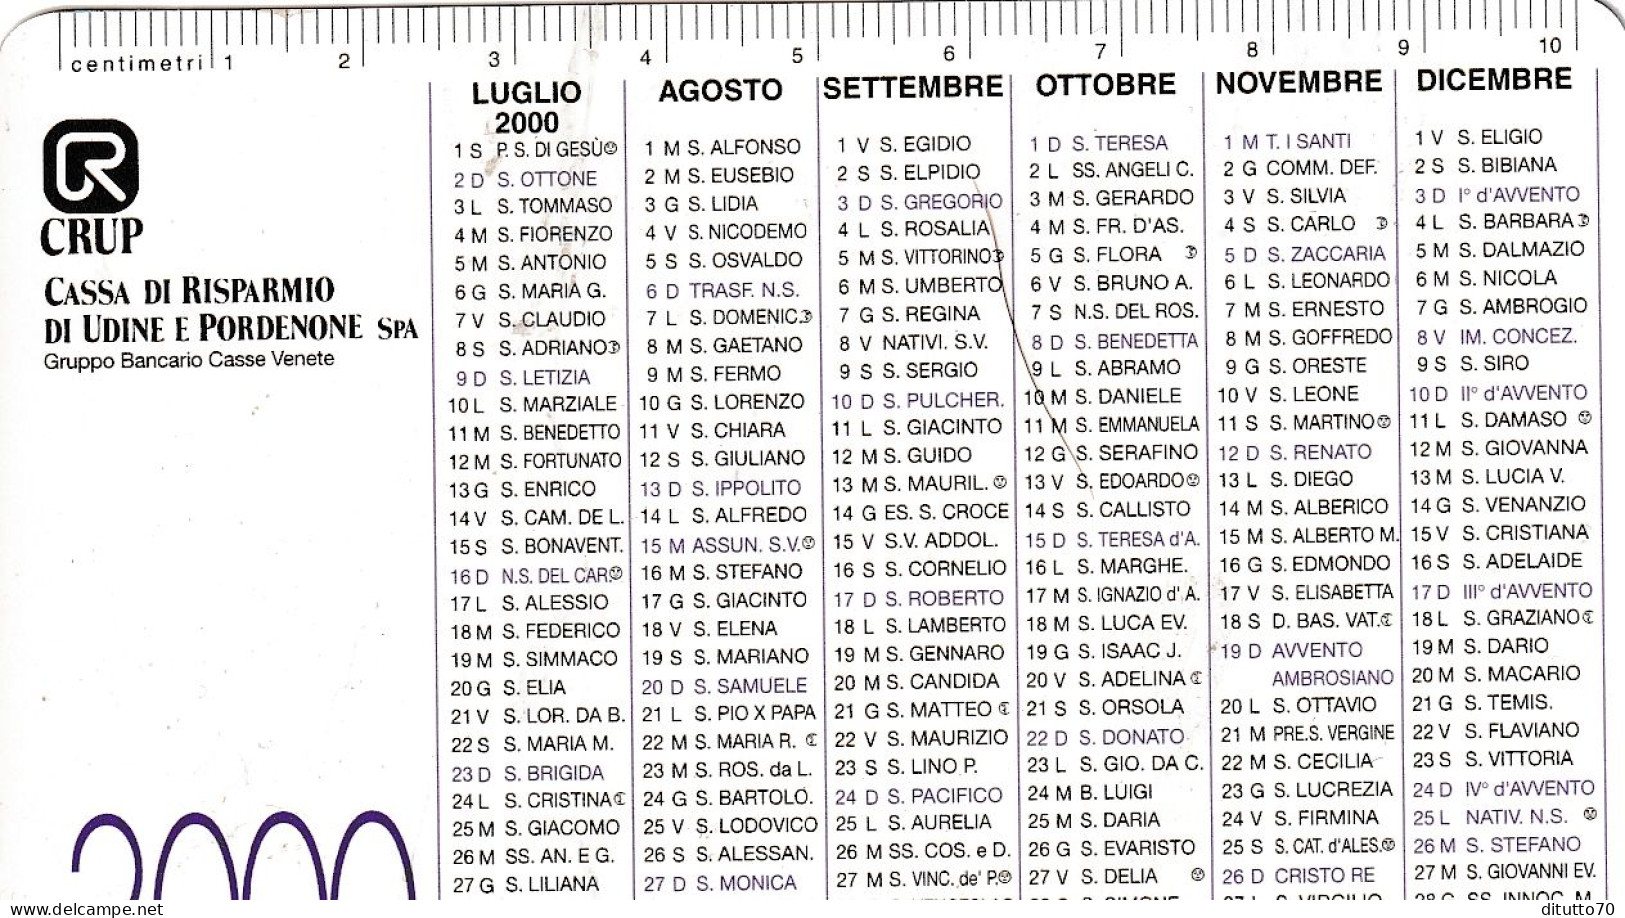 Calendarietto - Cassa Di Risparmio Di Udine E Pordenone - Anno 2000 - Small : 1991-00